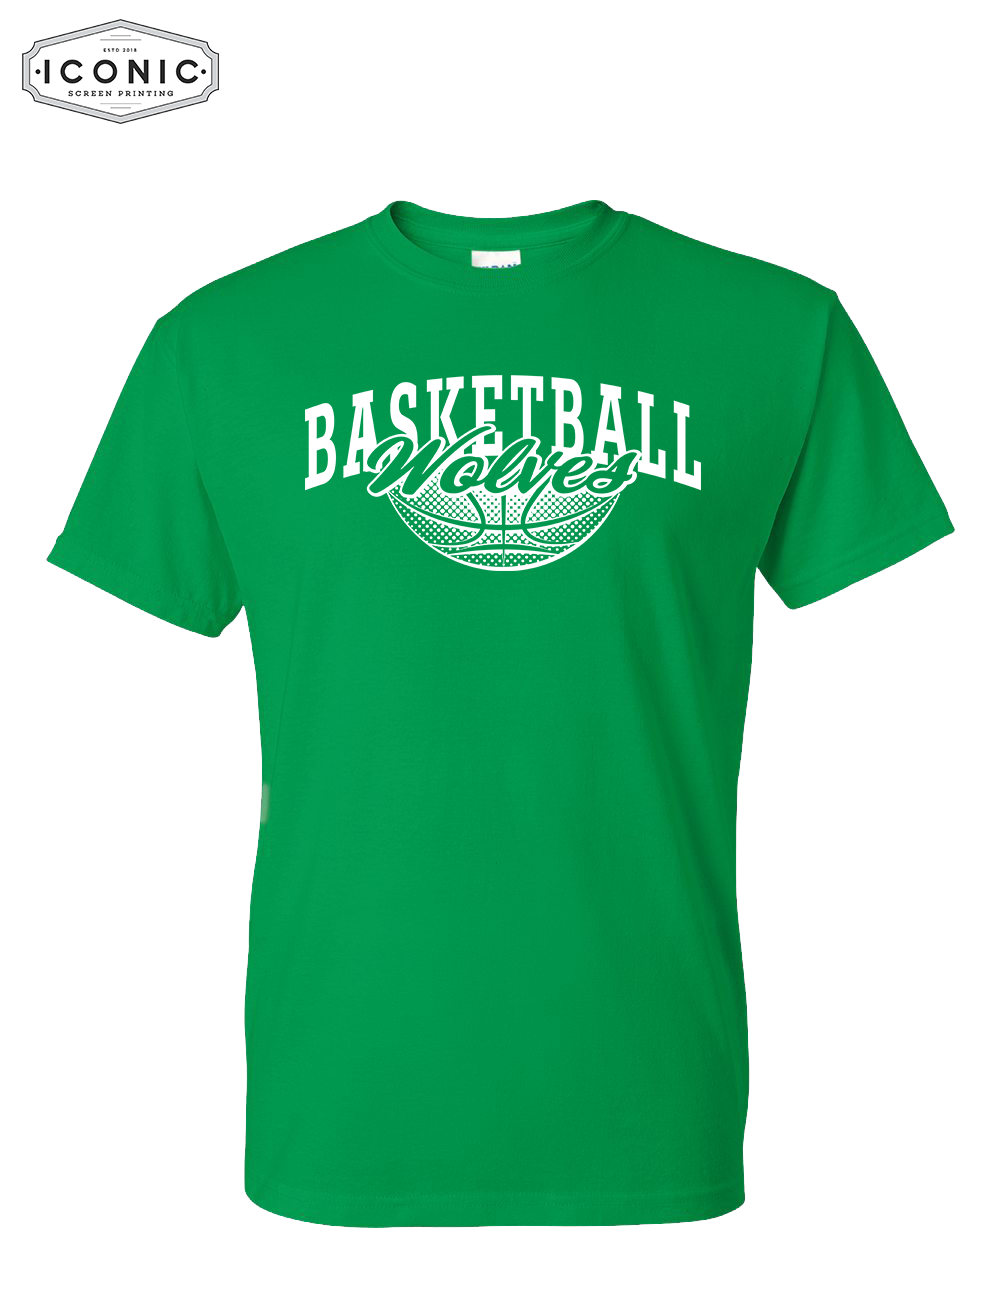 IKM Wolves Basketball - DryBlend T-shirt